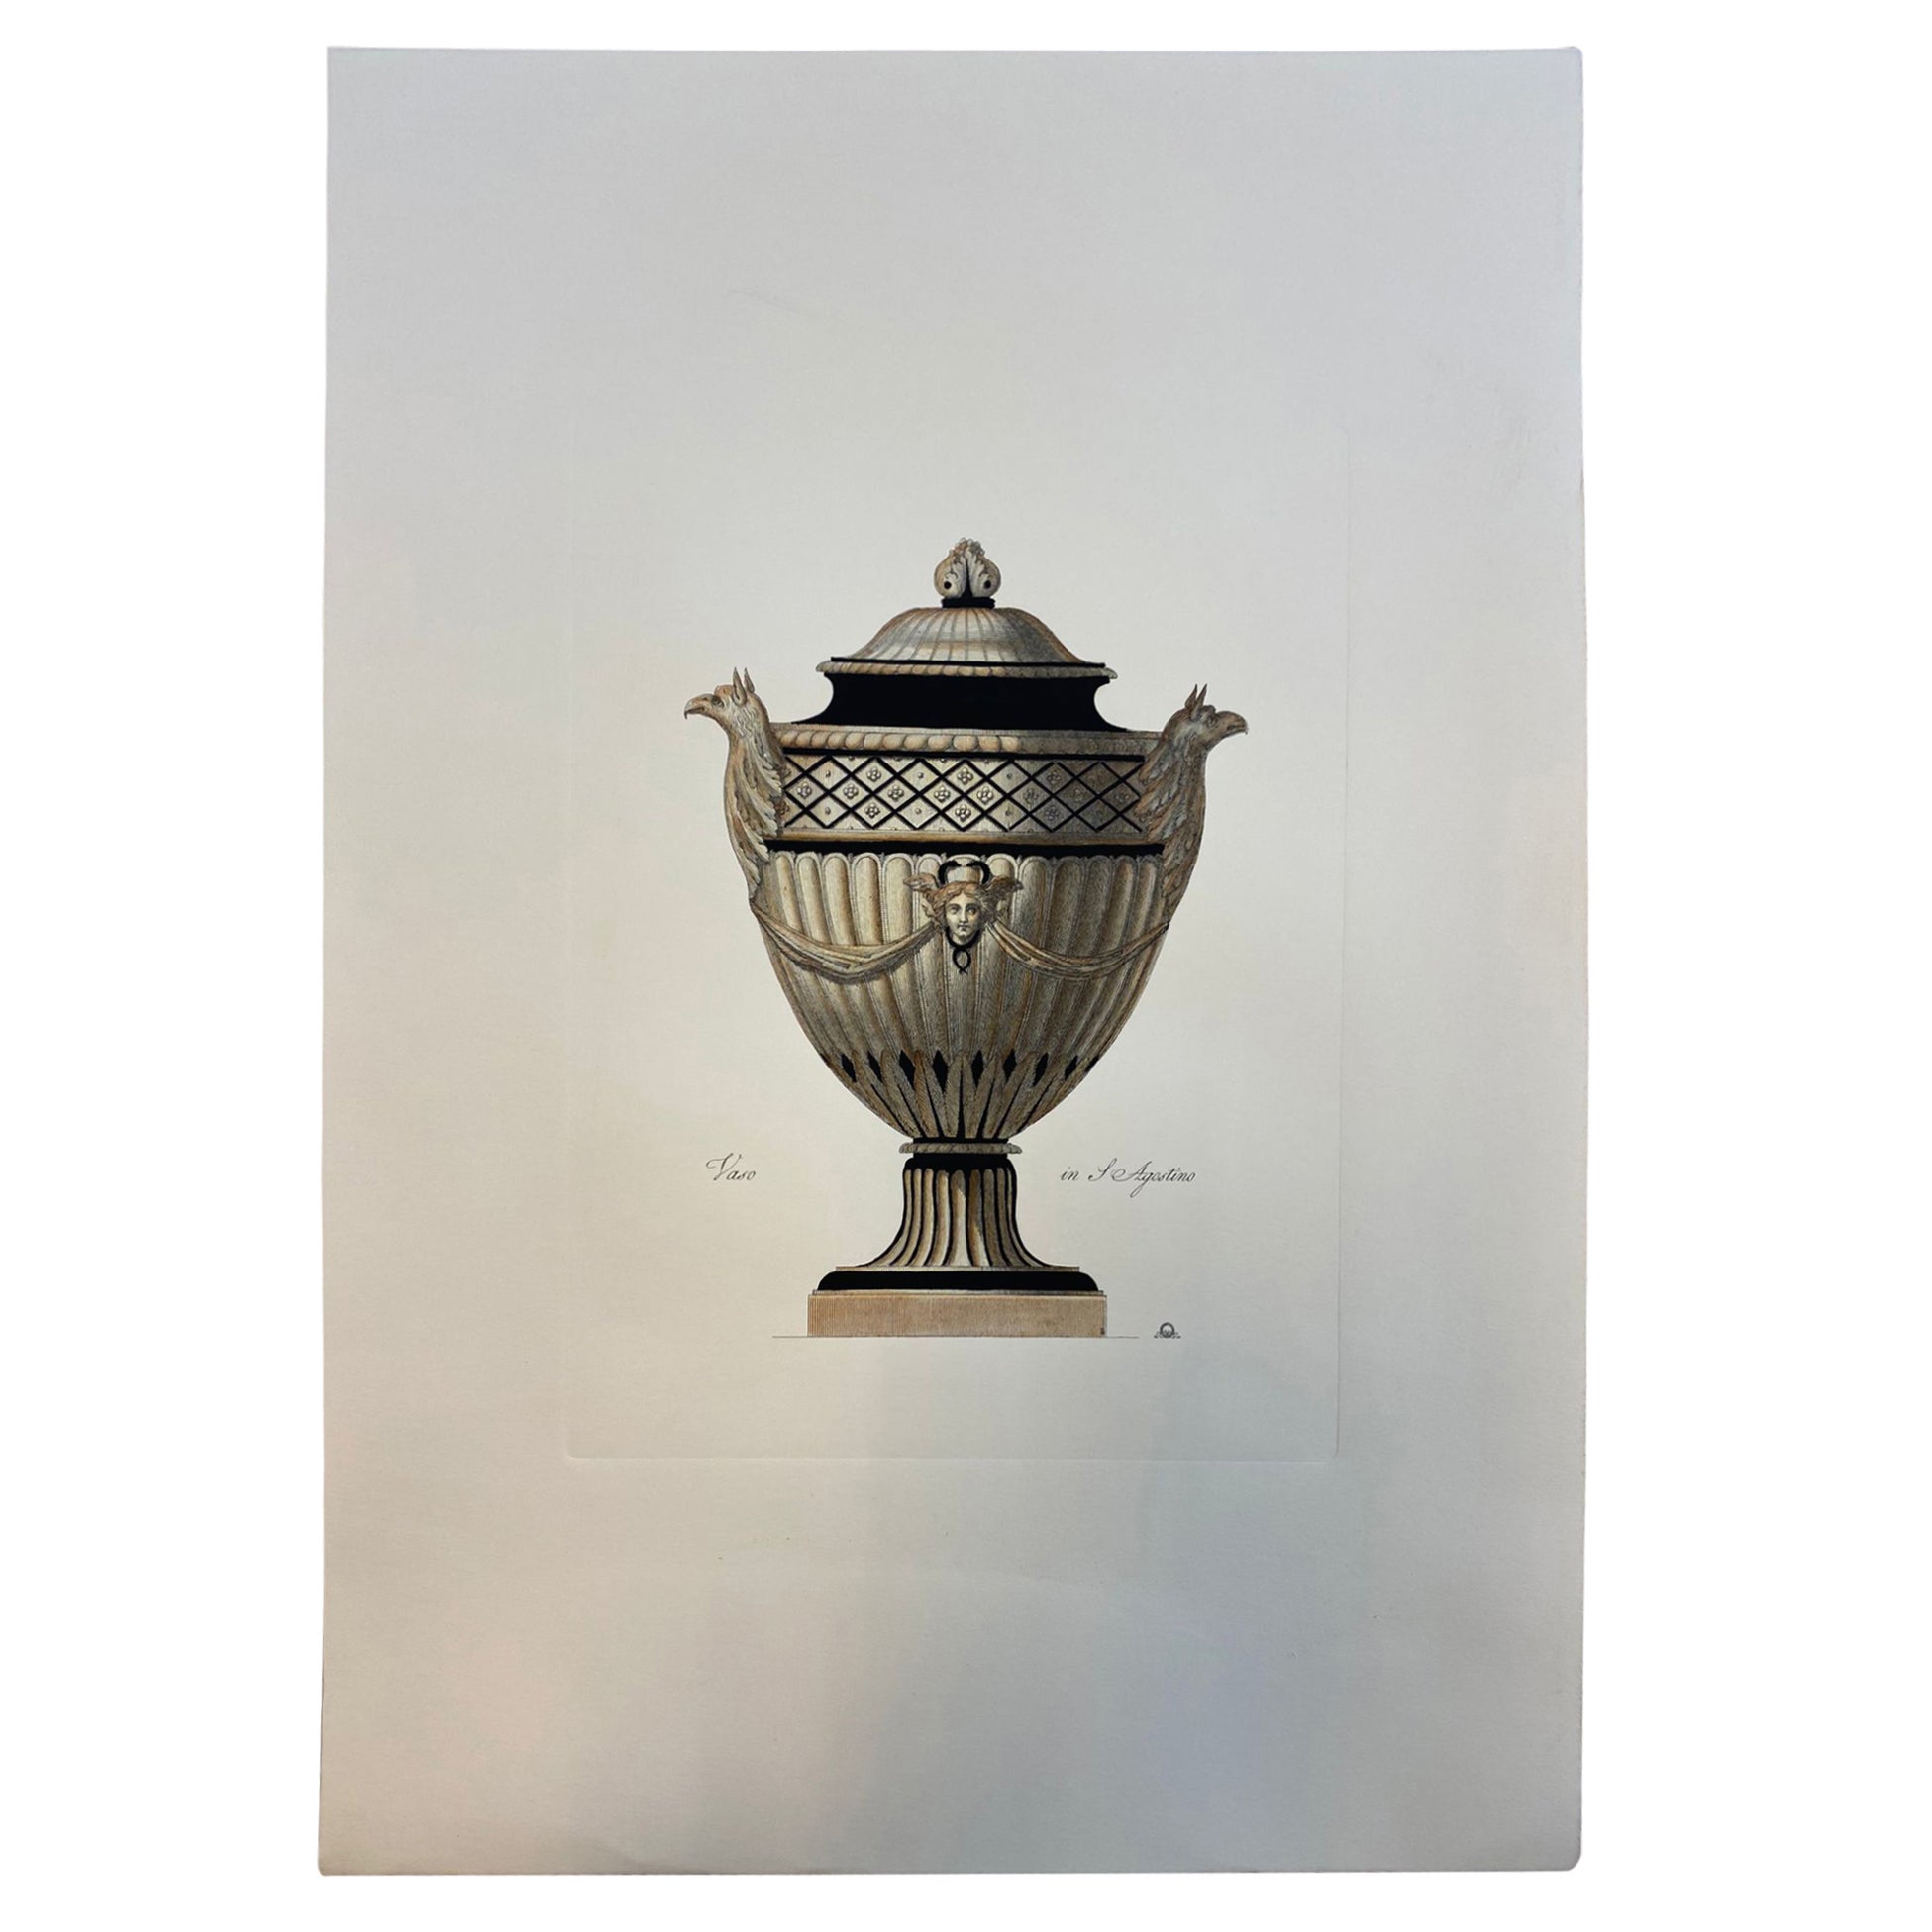 Gravure contemporaine italienne colorée à la main d'un vase romain antique "in S.Agostino"".